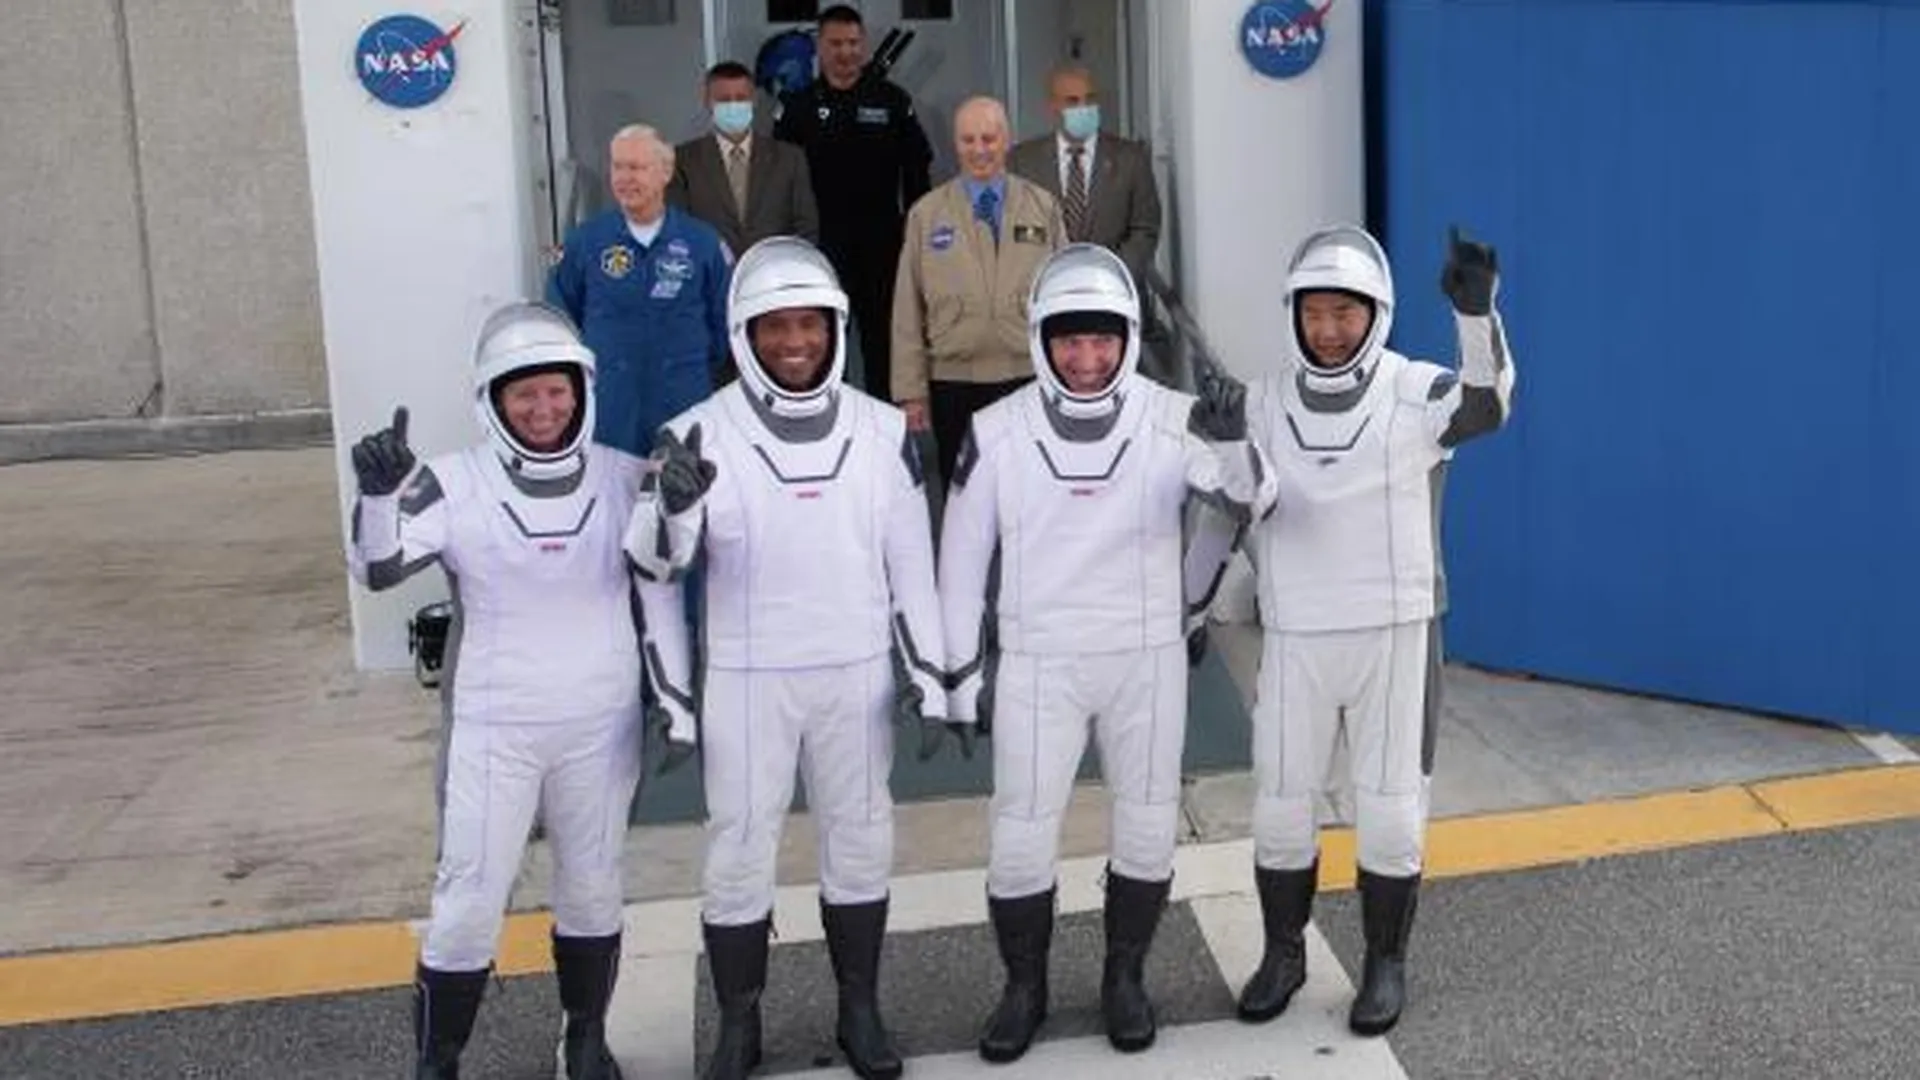 Астронавты Шеннон Уокер (NASA) Виктор Гловер (NASA), Майк Хопкинс (NASA) и Соити Ногути (JAXA) перед отправкой к стартовой площадке Космического центра имени Джорджа Кеннеди.